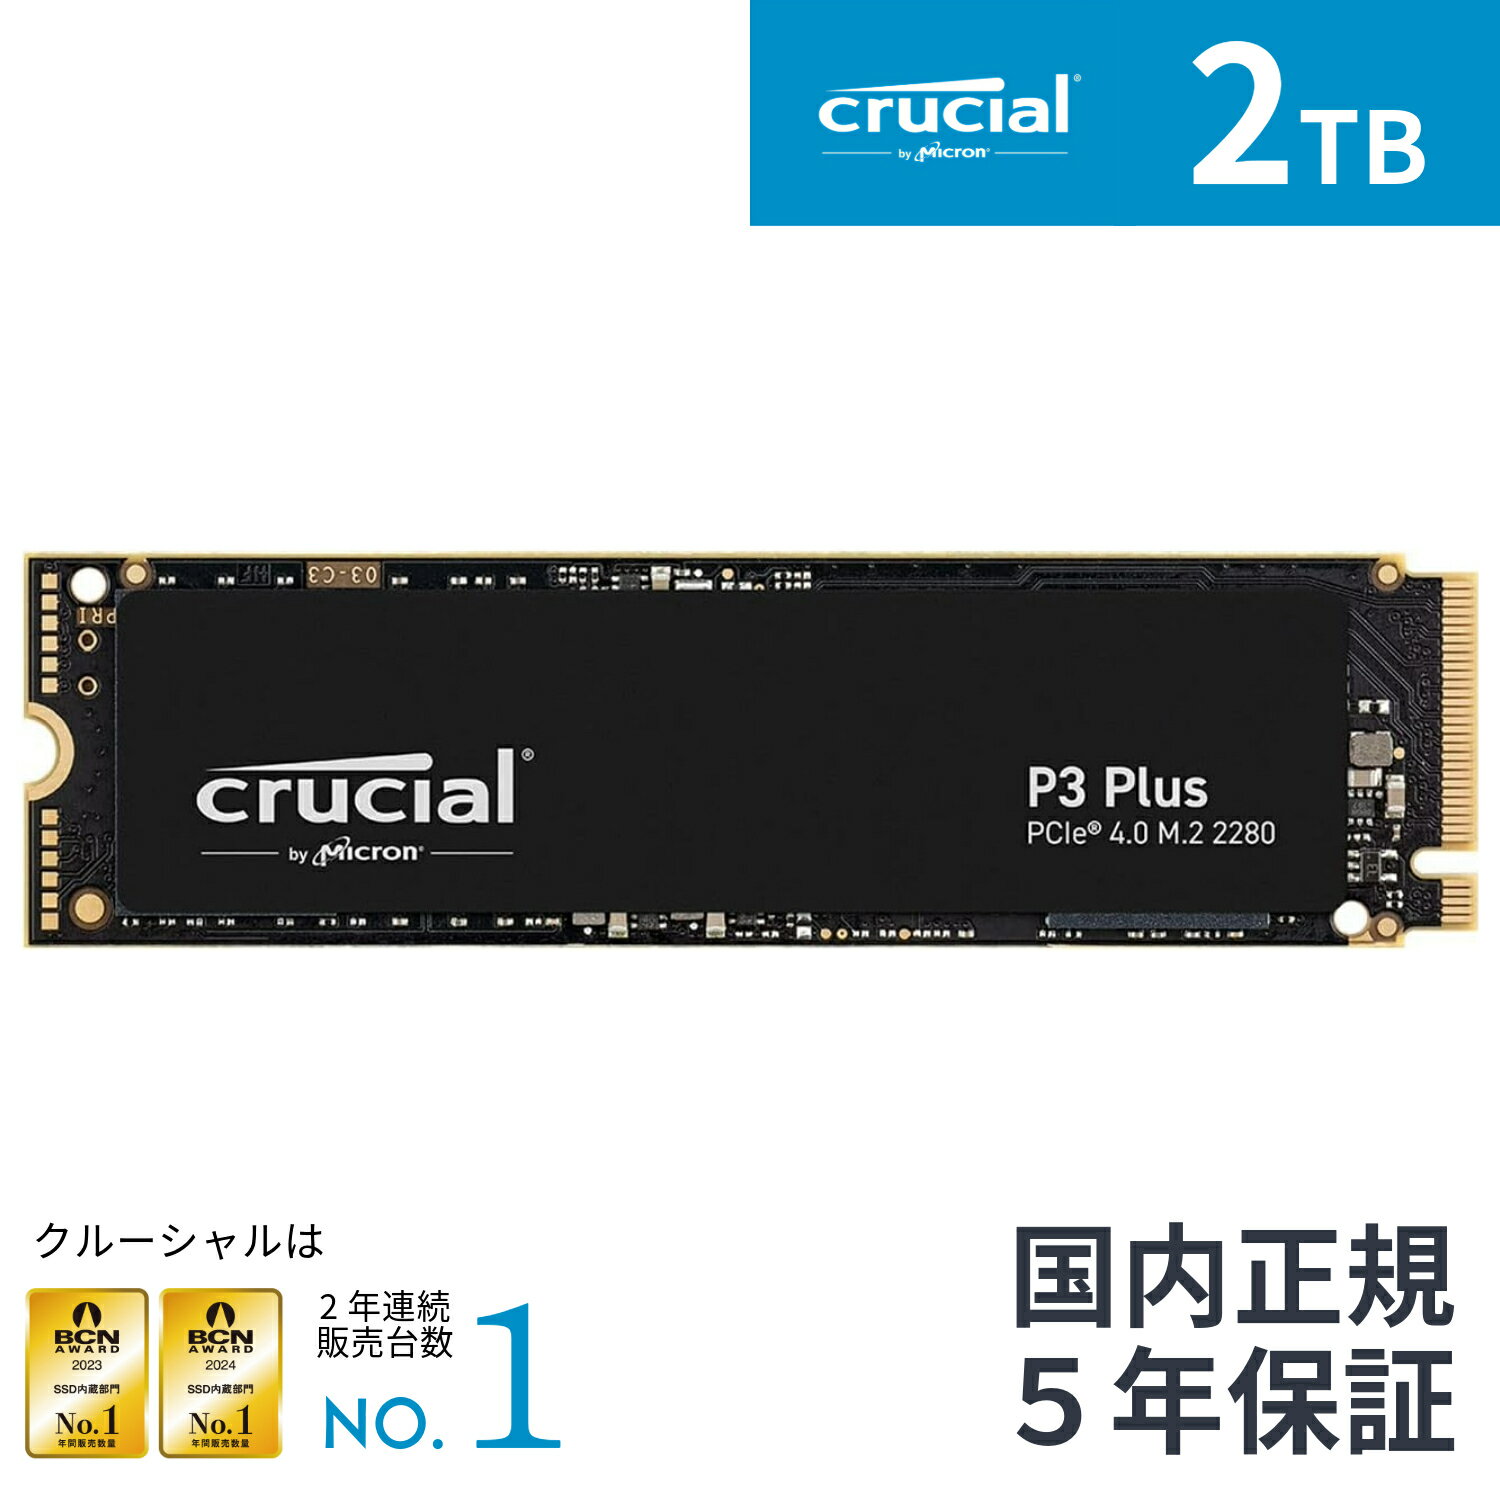 【国内正規流通品】Crucial クルーシャルP3plus 